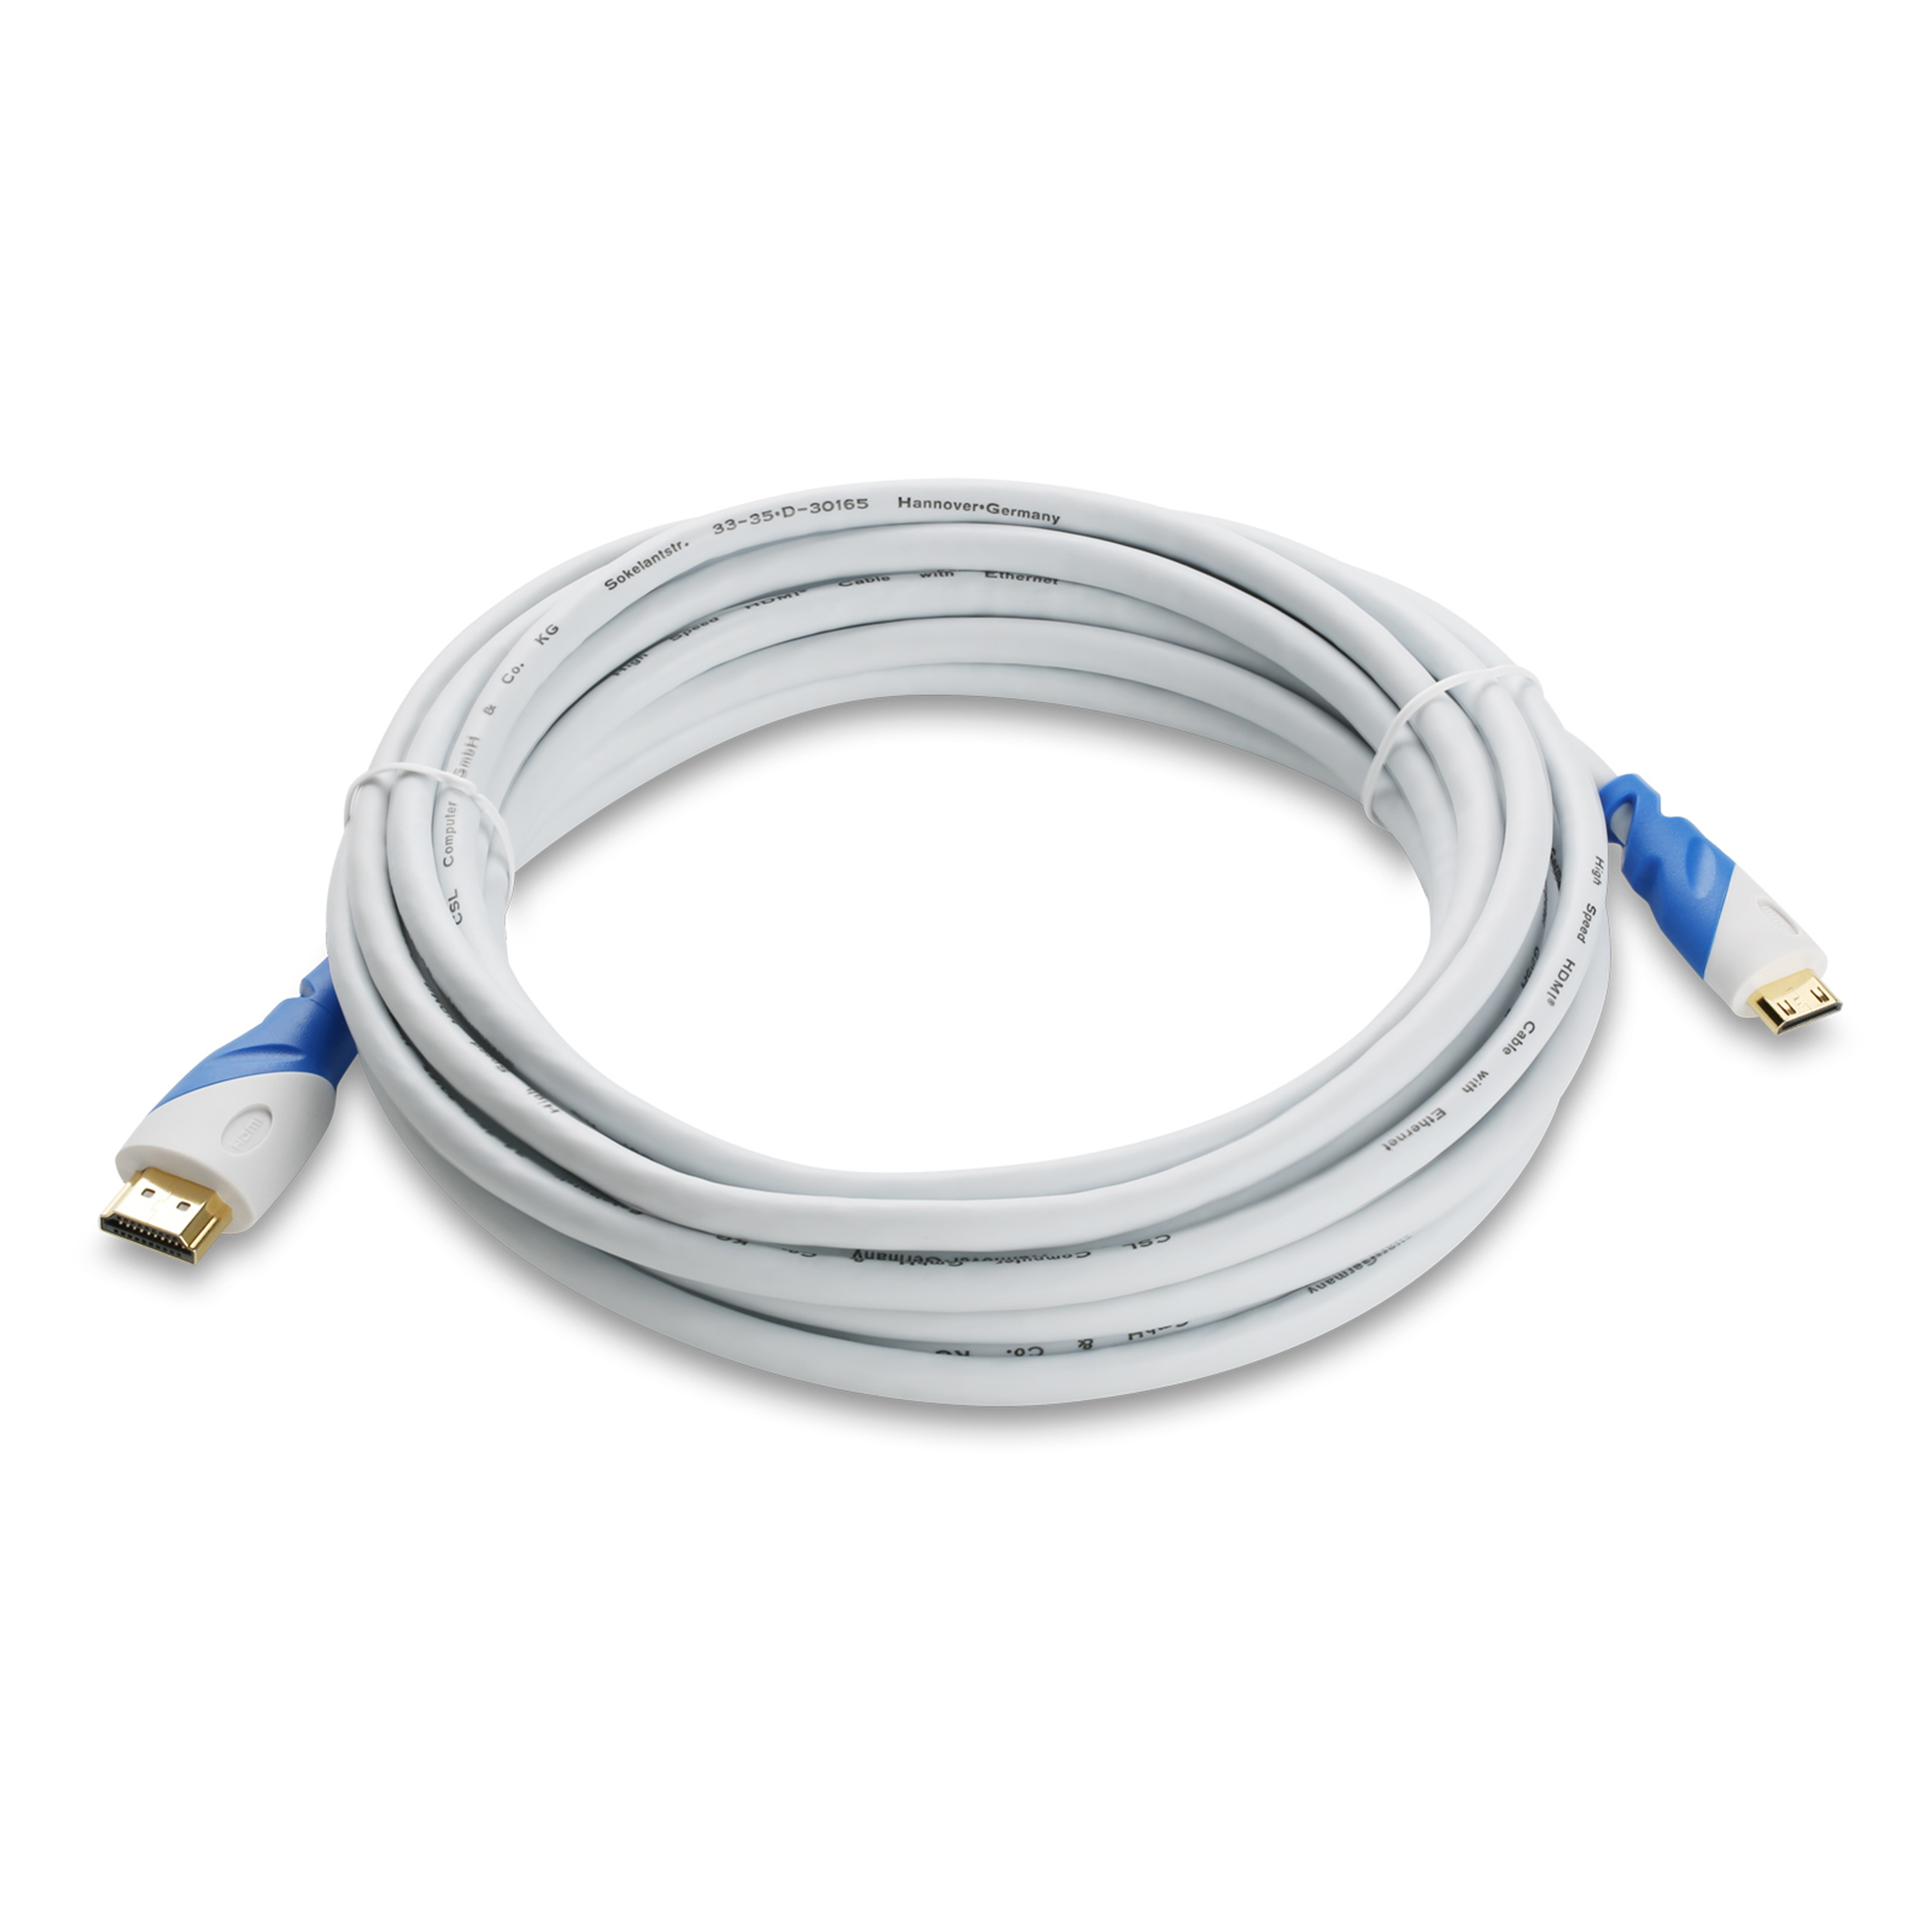 Kabel, weiß/blau HDMI gewinkelt, 2m Kabel, 2.0 HDMI CSL